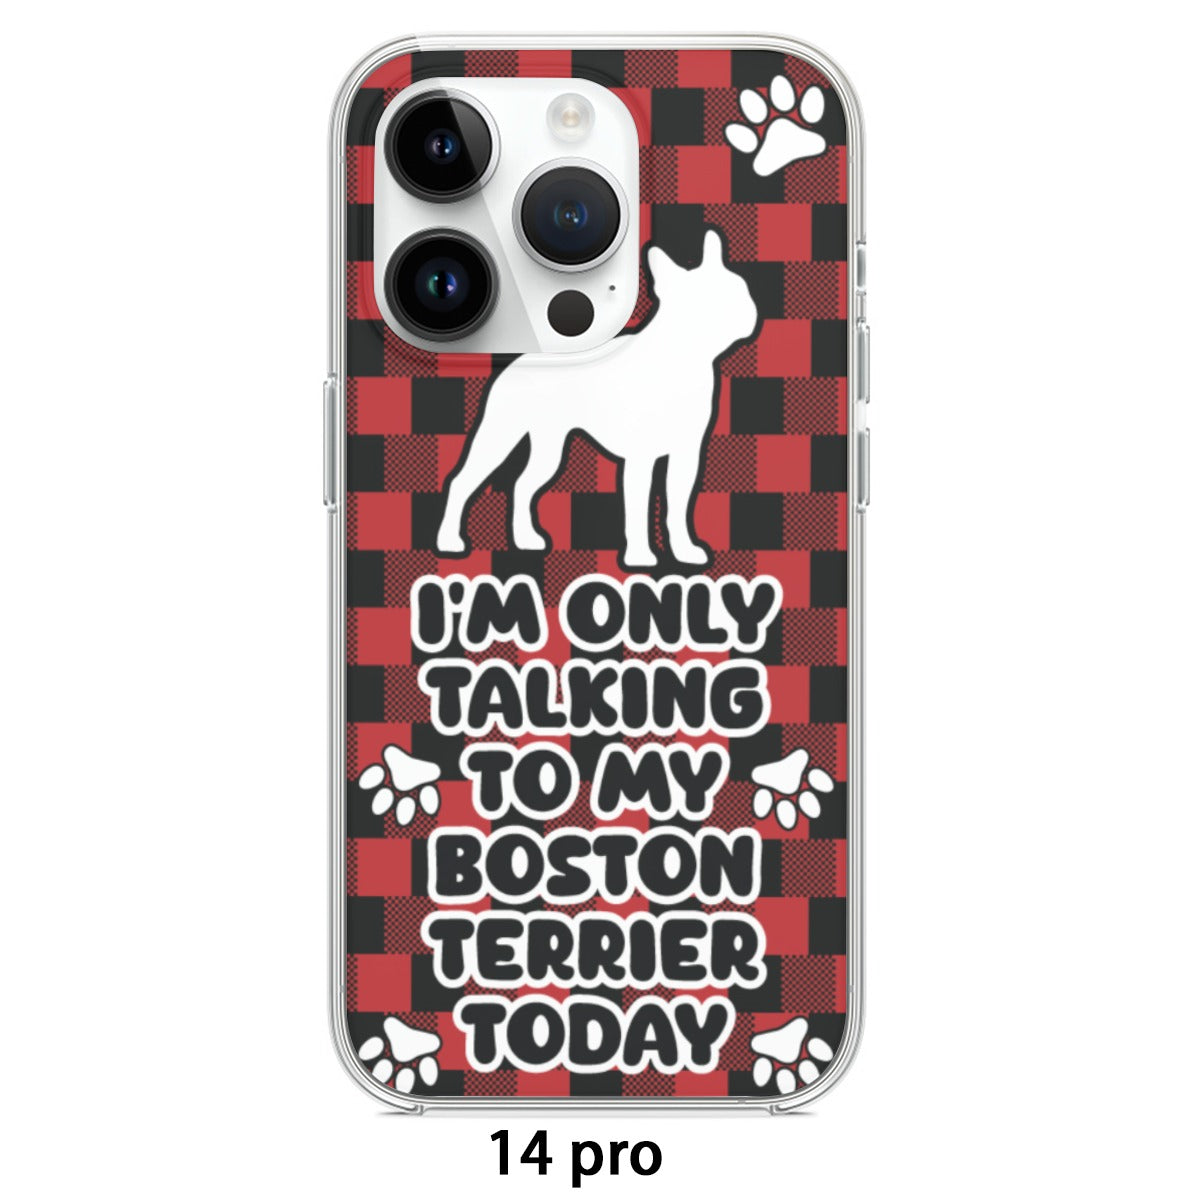 Hugo - iPhone case for Boston Terrier lovers